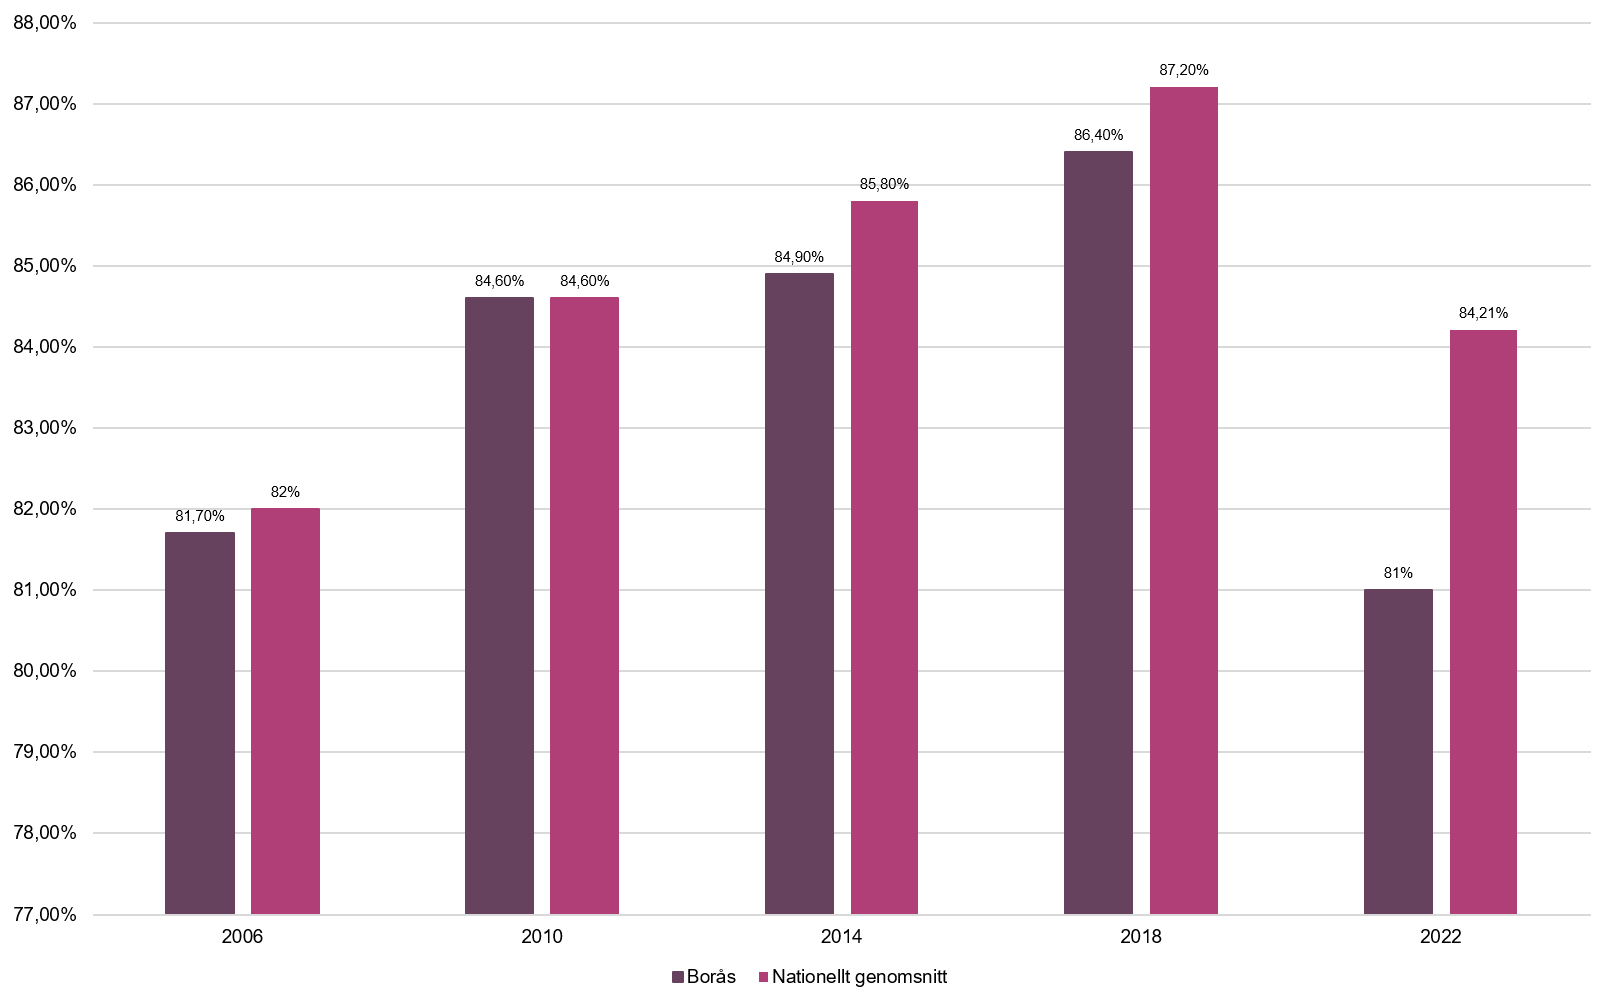 En tabell som visar valdeltagandet i riksdagsvalet i Borås jämfört med genomsnittet för hela landet, från år 2006 till 2022.